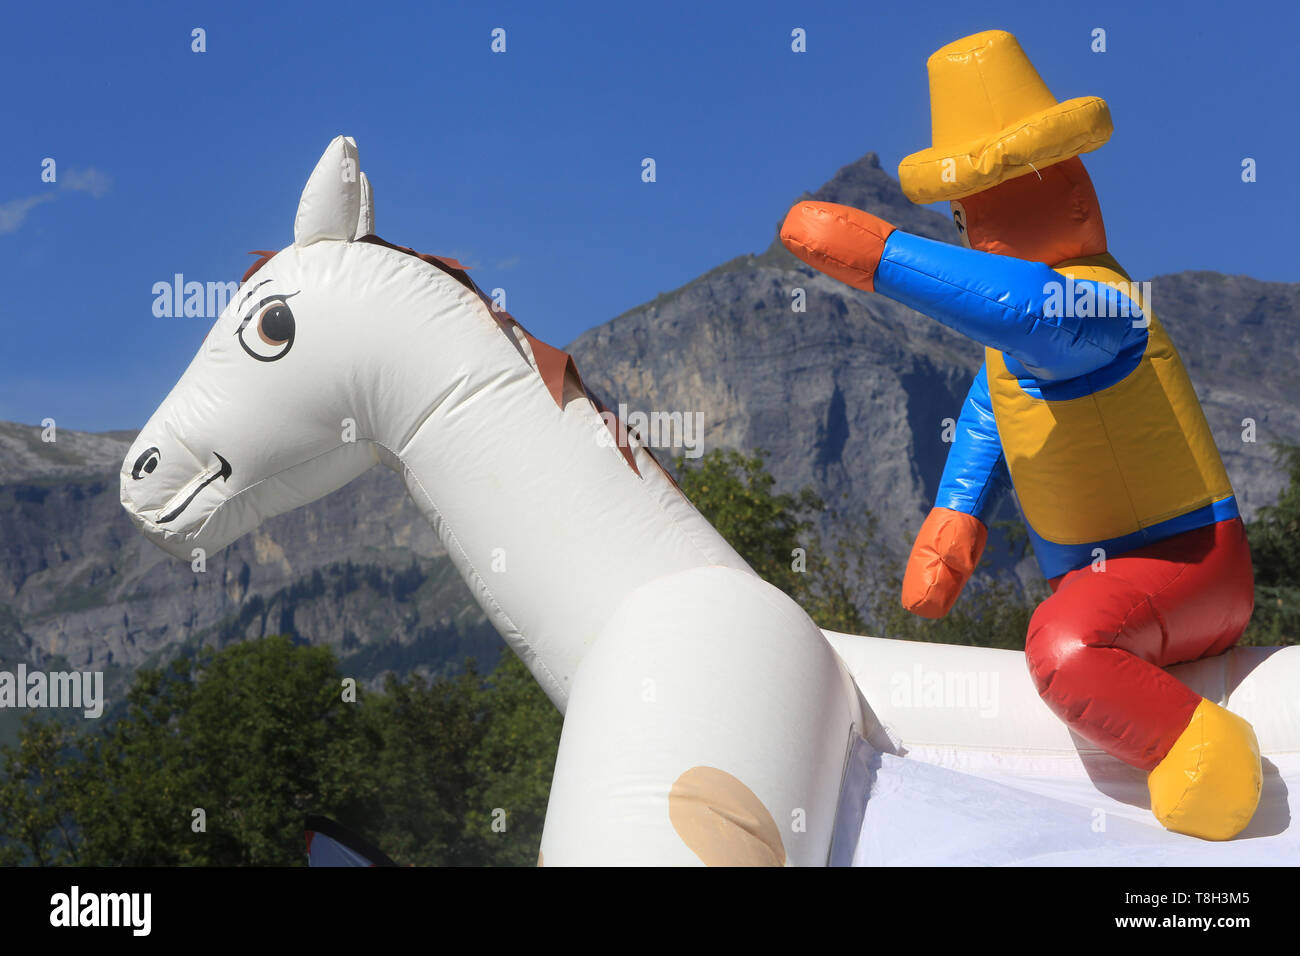 Ballon de baudruche en forme de cavalier. Saint-Gervais-les-Bains. Haute-Savoie. France. Stock Photo